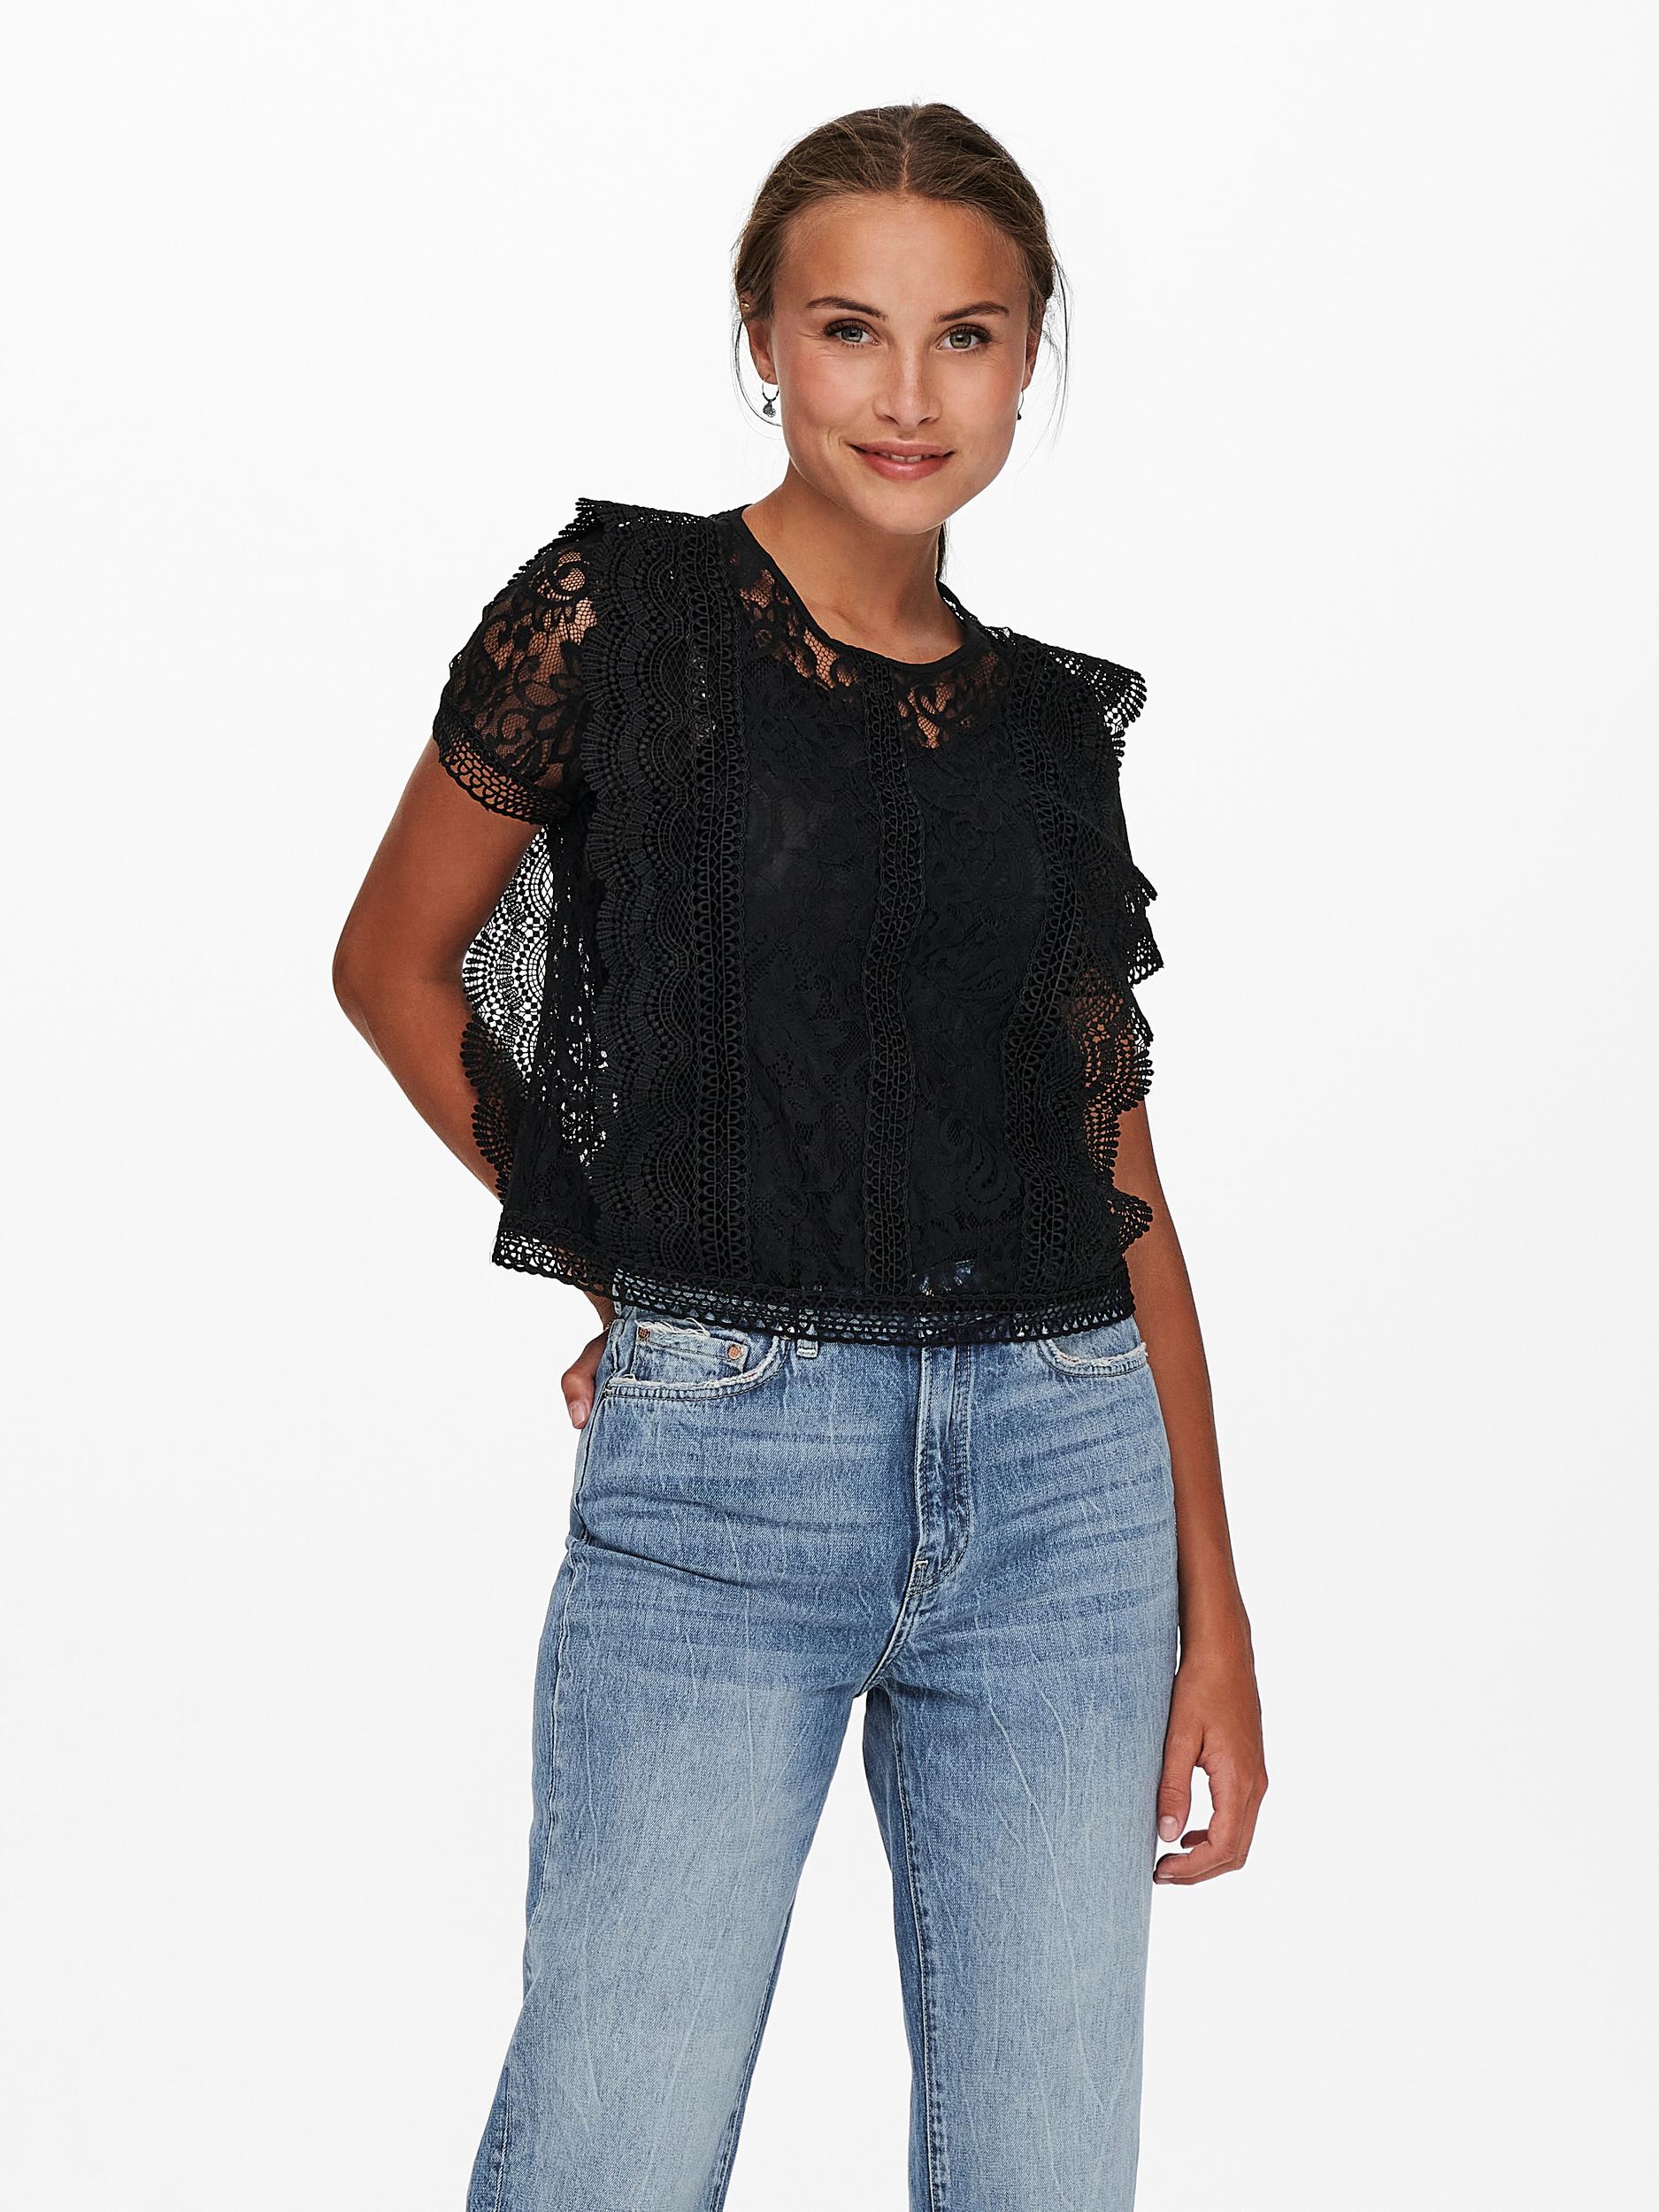 Lona lace overlay blouse, BLACK, large